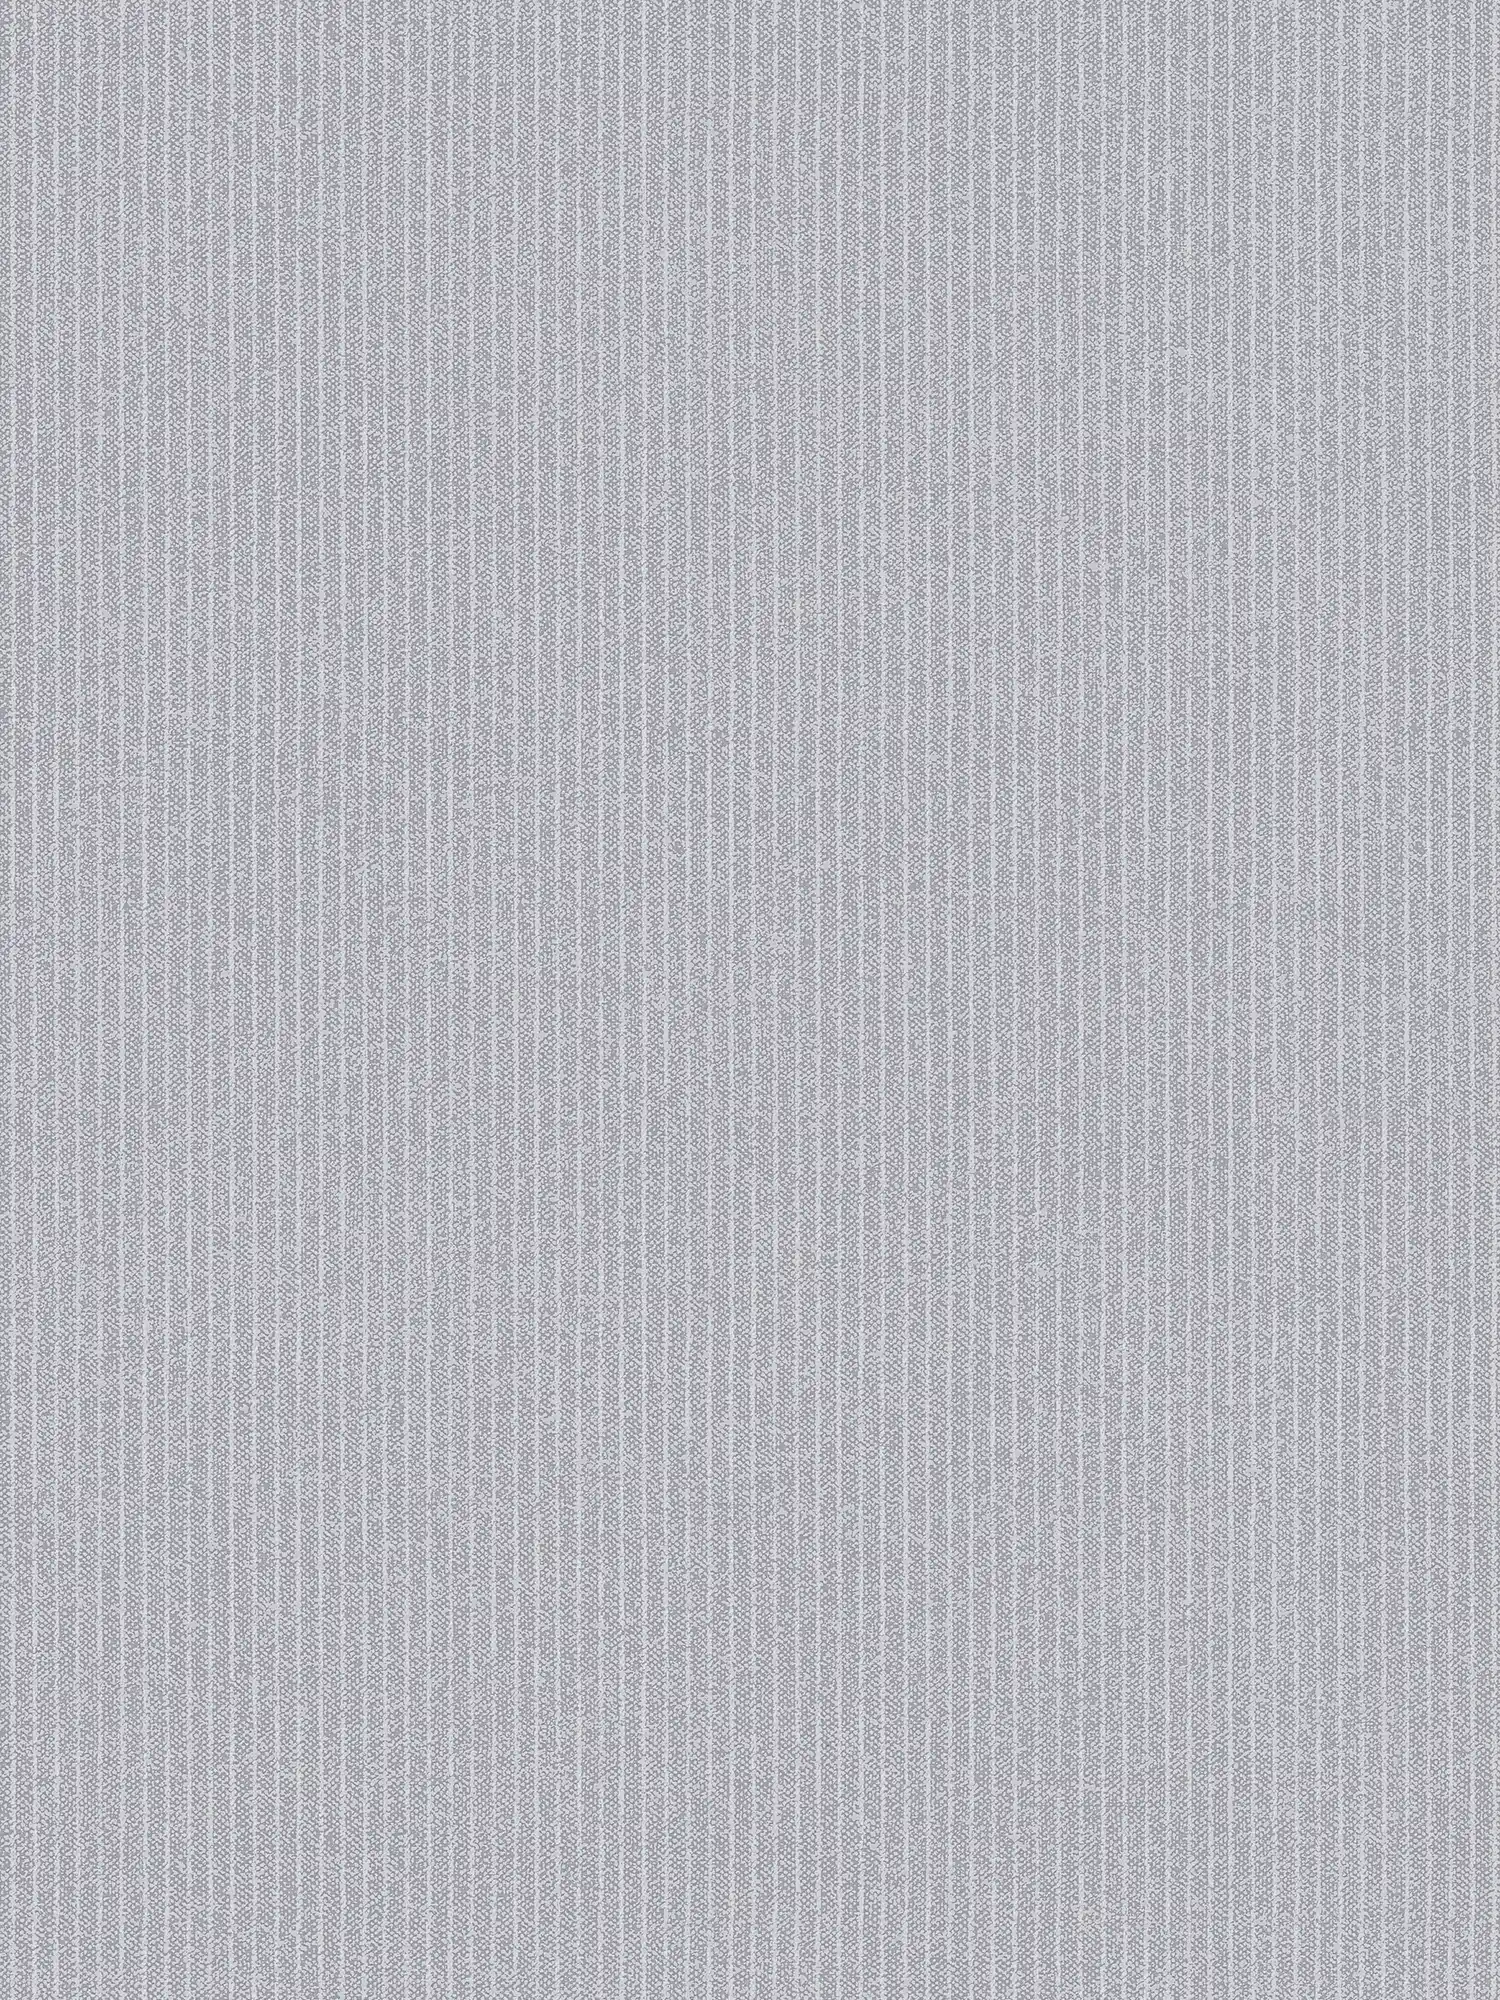 Papel pintado de rayas estrechas con aspecto textil - gris
